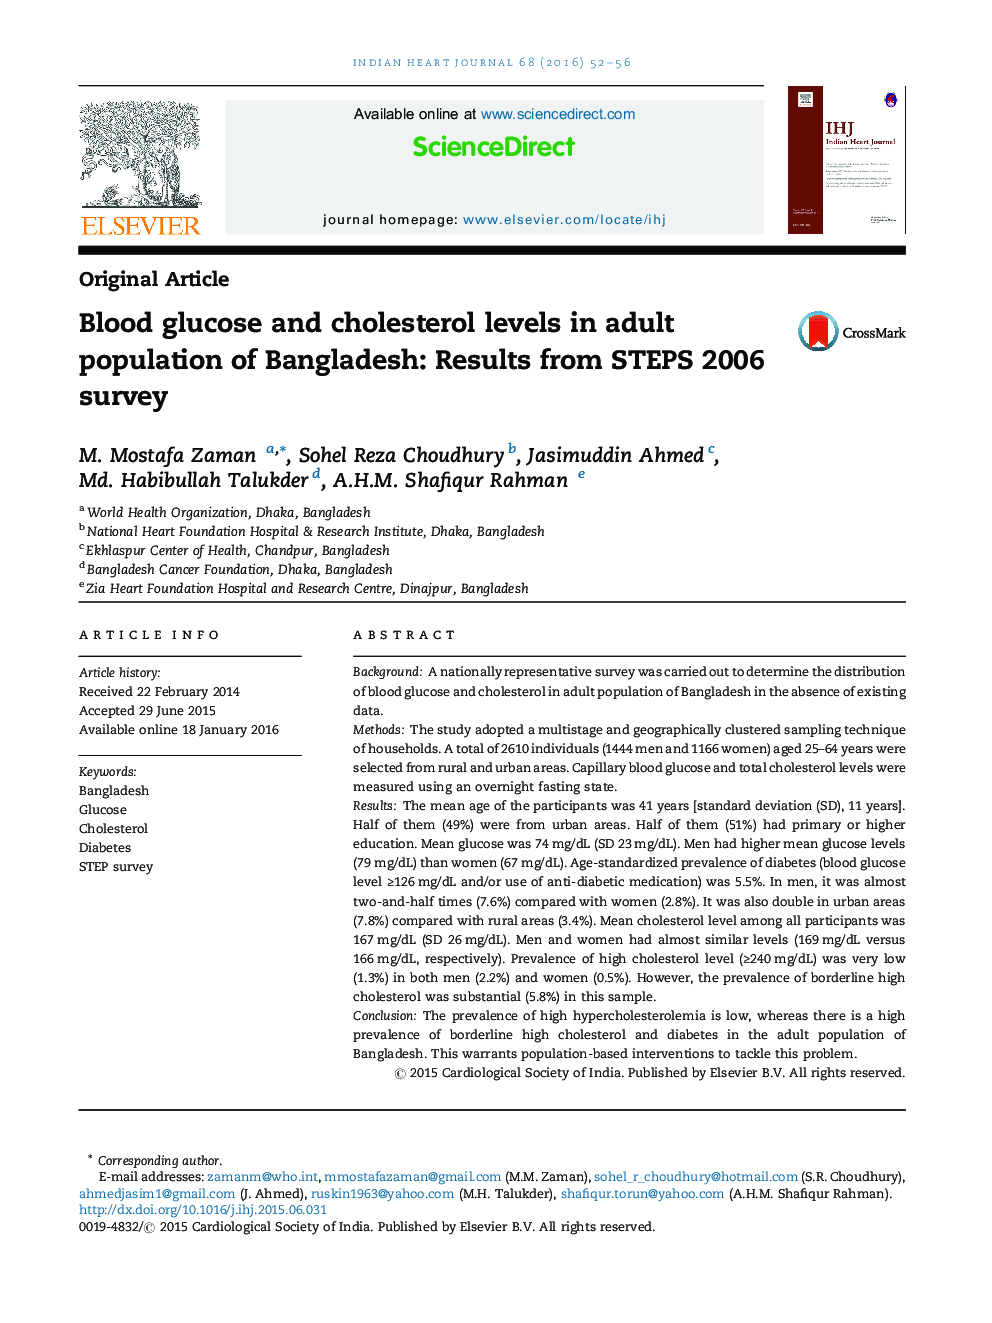 سطح قند خون و کلسترول در جمعیت بزرگسال بنگلادش: نتایج بررسی STEPS 2006